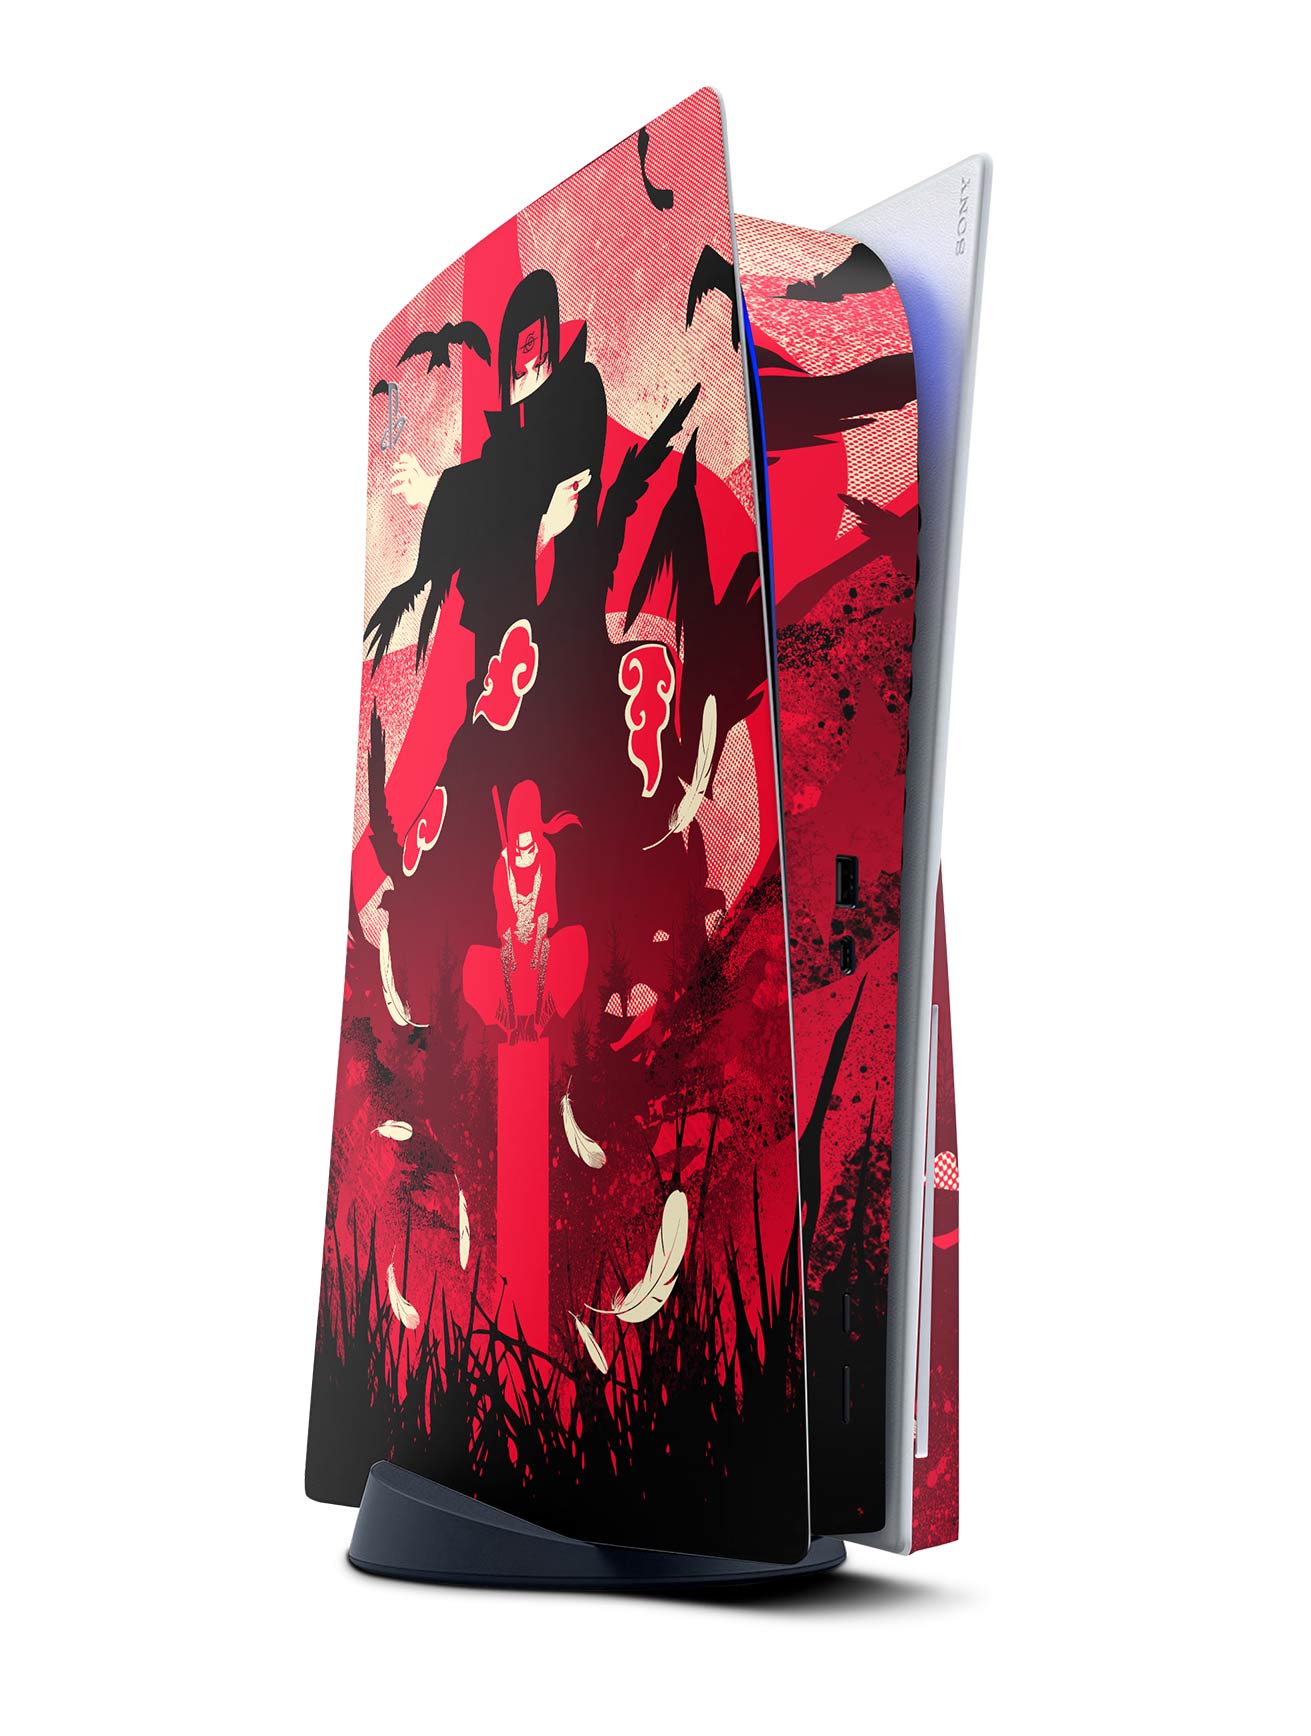 PS5 Disk SLIM Anime NARUTO Skin, PS5 Disk Protector Skin